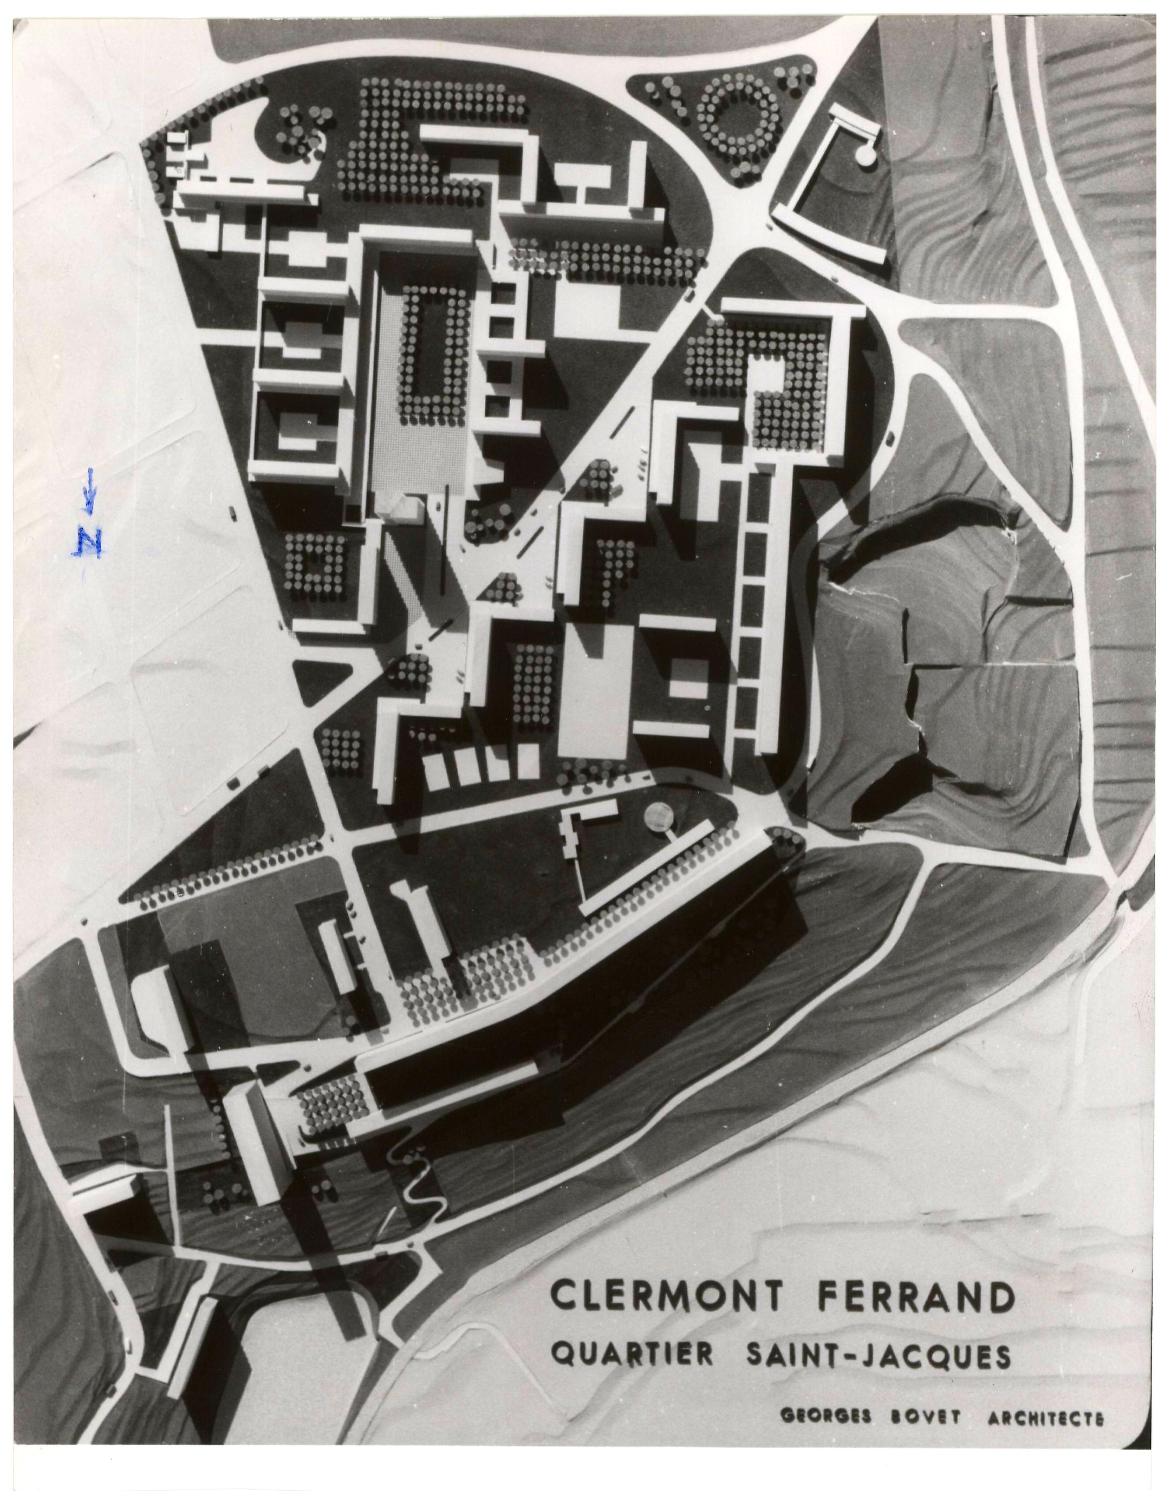 Cliché de la maquette signée de Georges Bovet ayant été présentée à la foire-exposition de Clermont-Ferrand en septembre 1955 sur le stand du ministère de la reconstruction et de l'urbanisme.